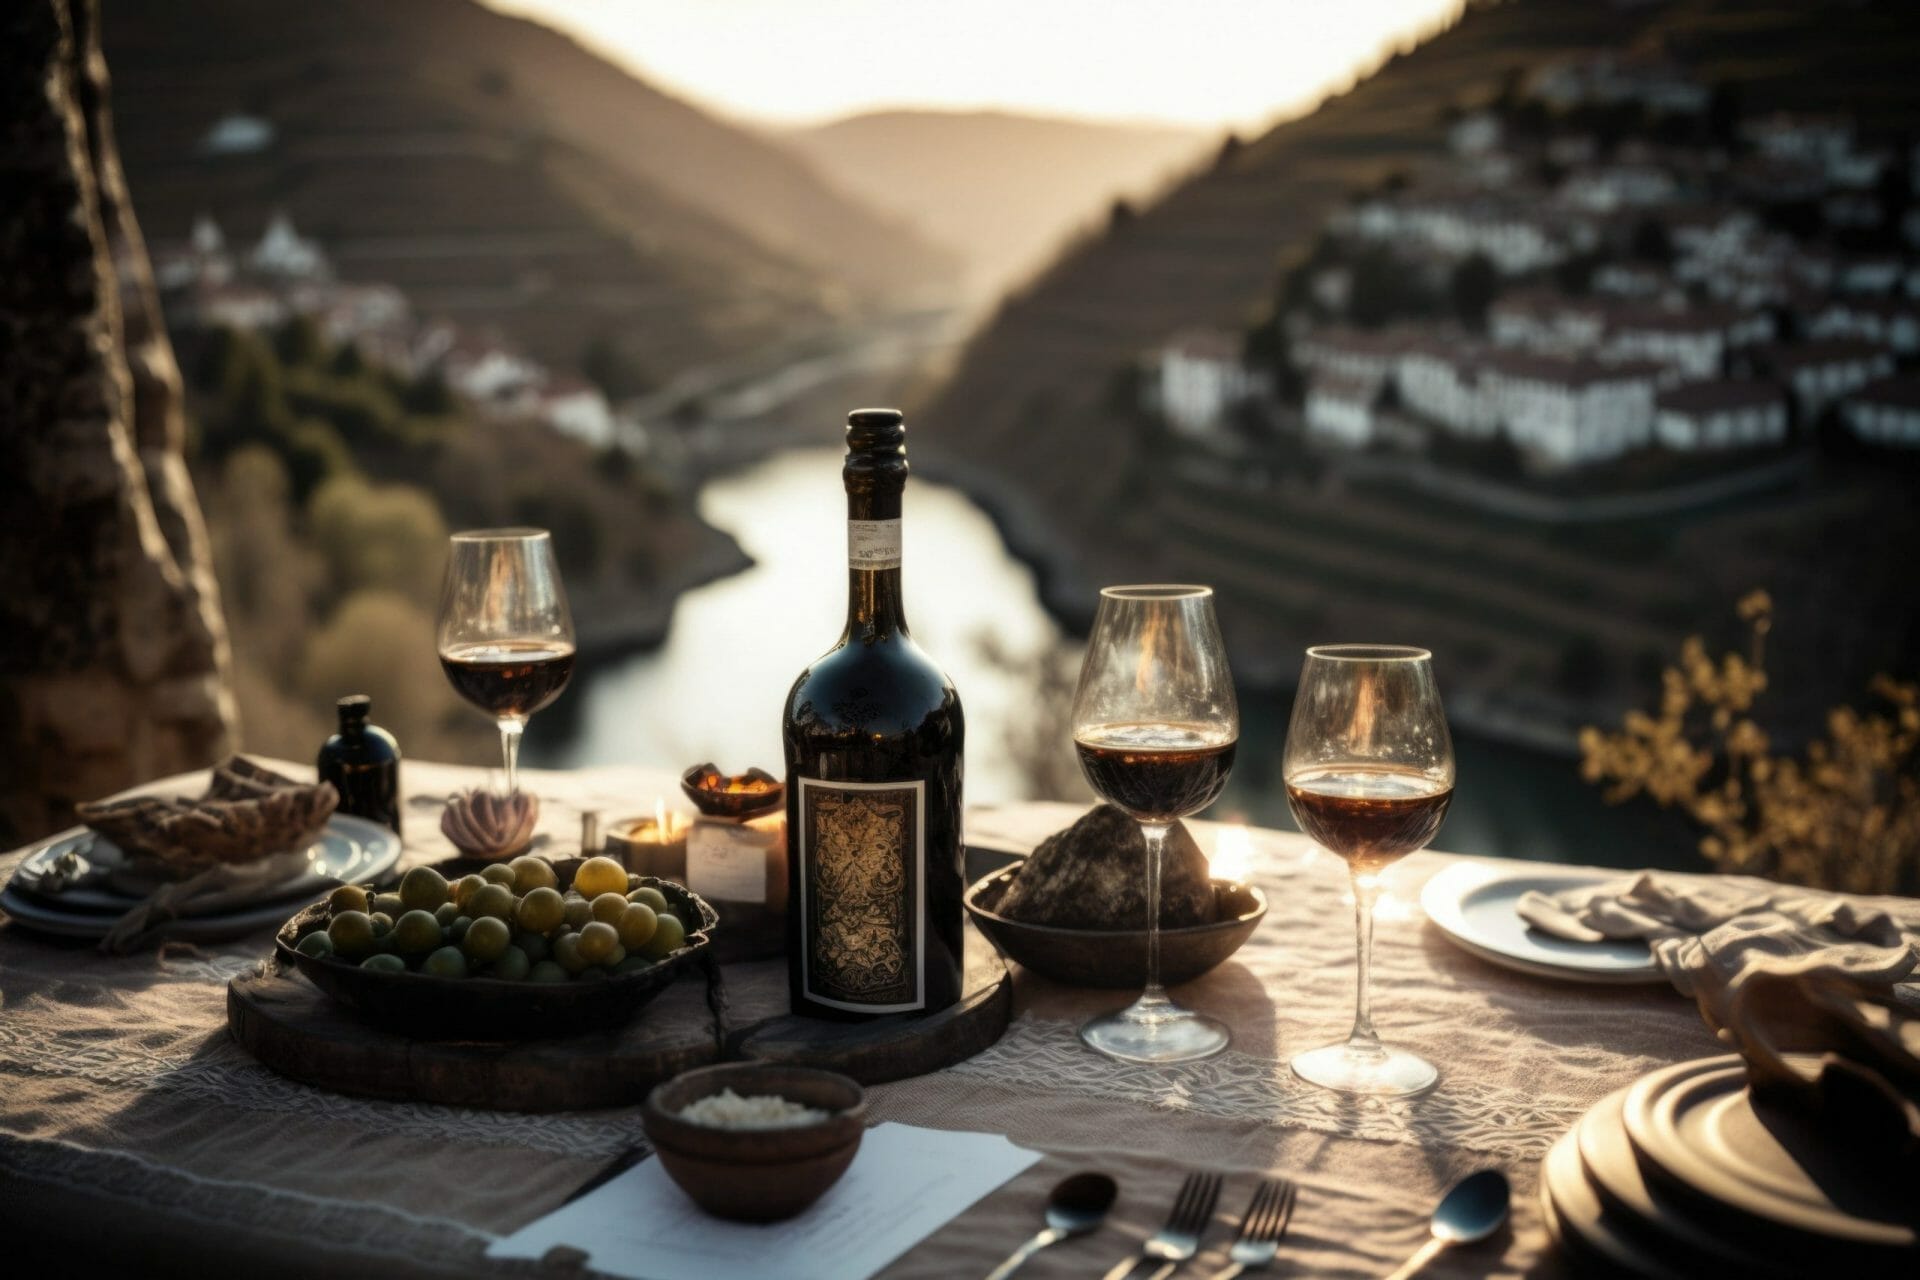 Una impresionante disposición de mesa que presenta una botella de vino de Oporto de añada. Portugal